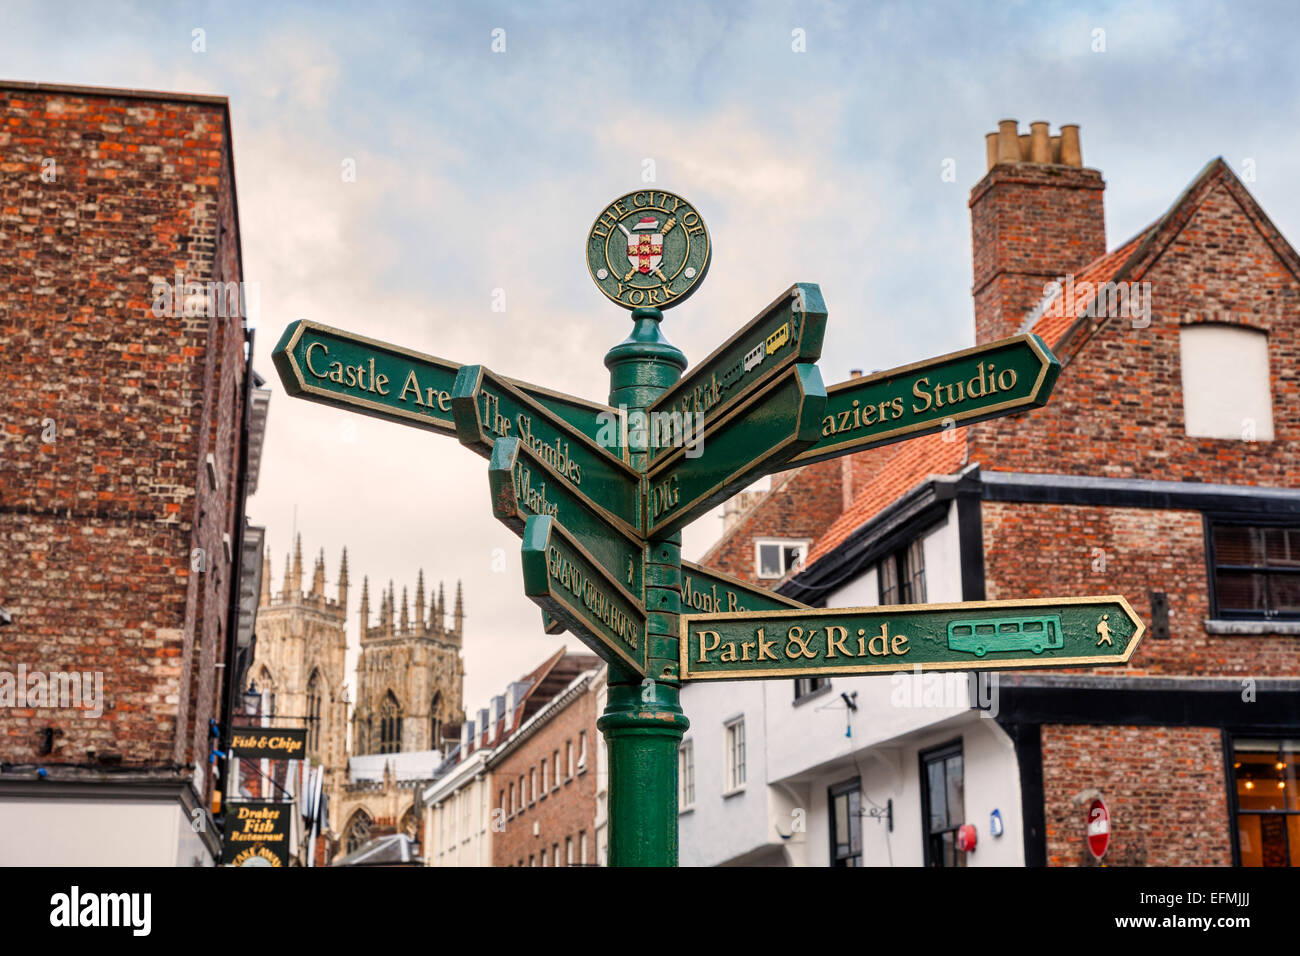 Cartel mostrando lugares de interés en Kings Square, York. Centrarse en firmar. Foto de stock